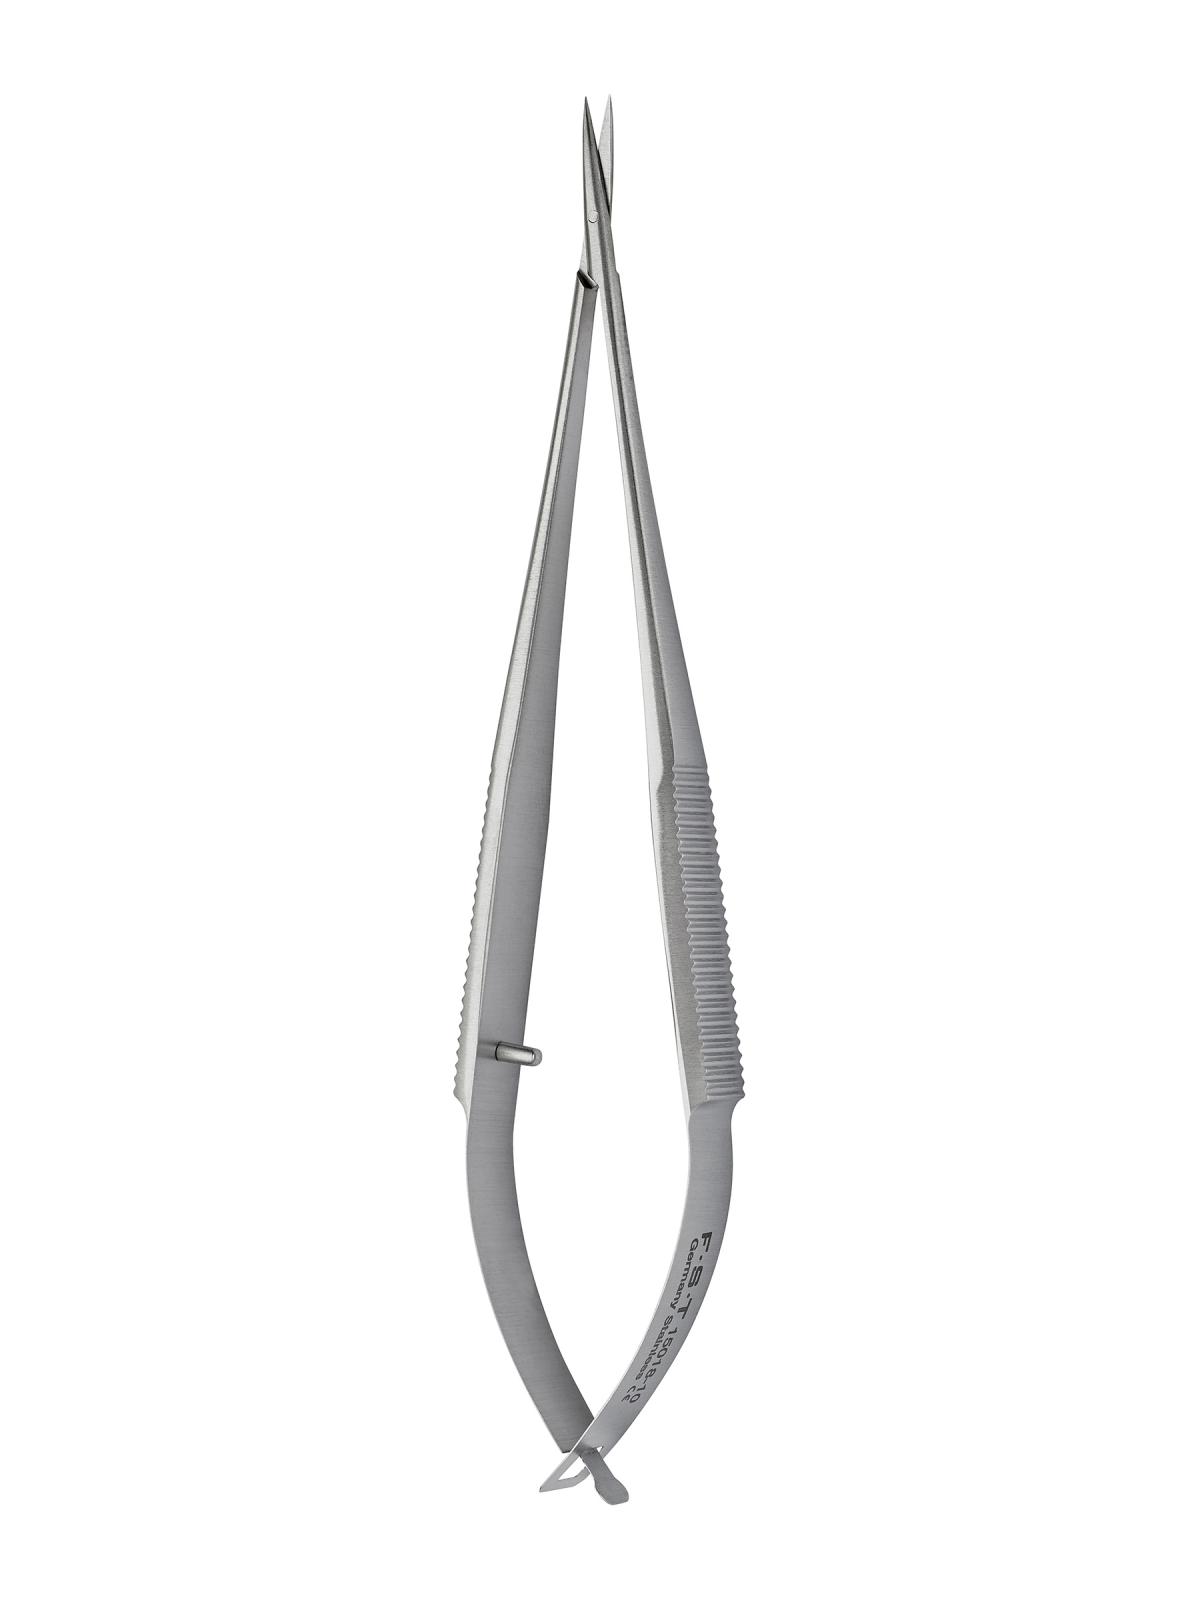 Fine Science Tools Vannas Spring Scissors - 2.5mm Cutting Edge, Quantity